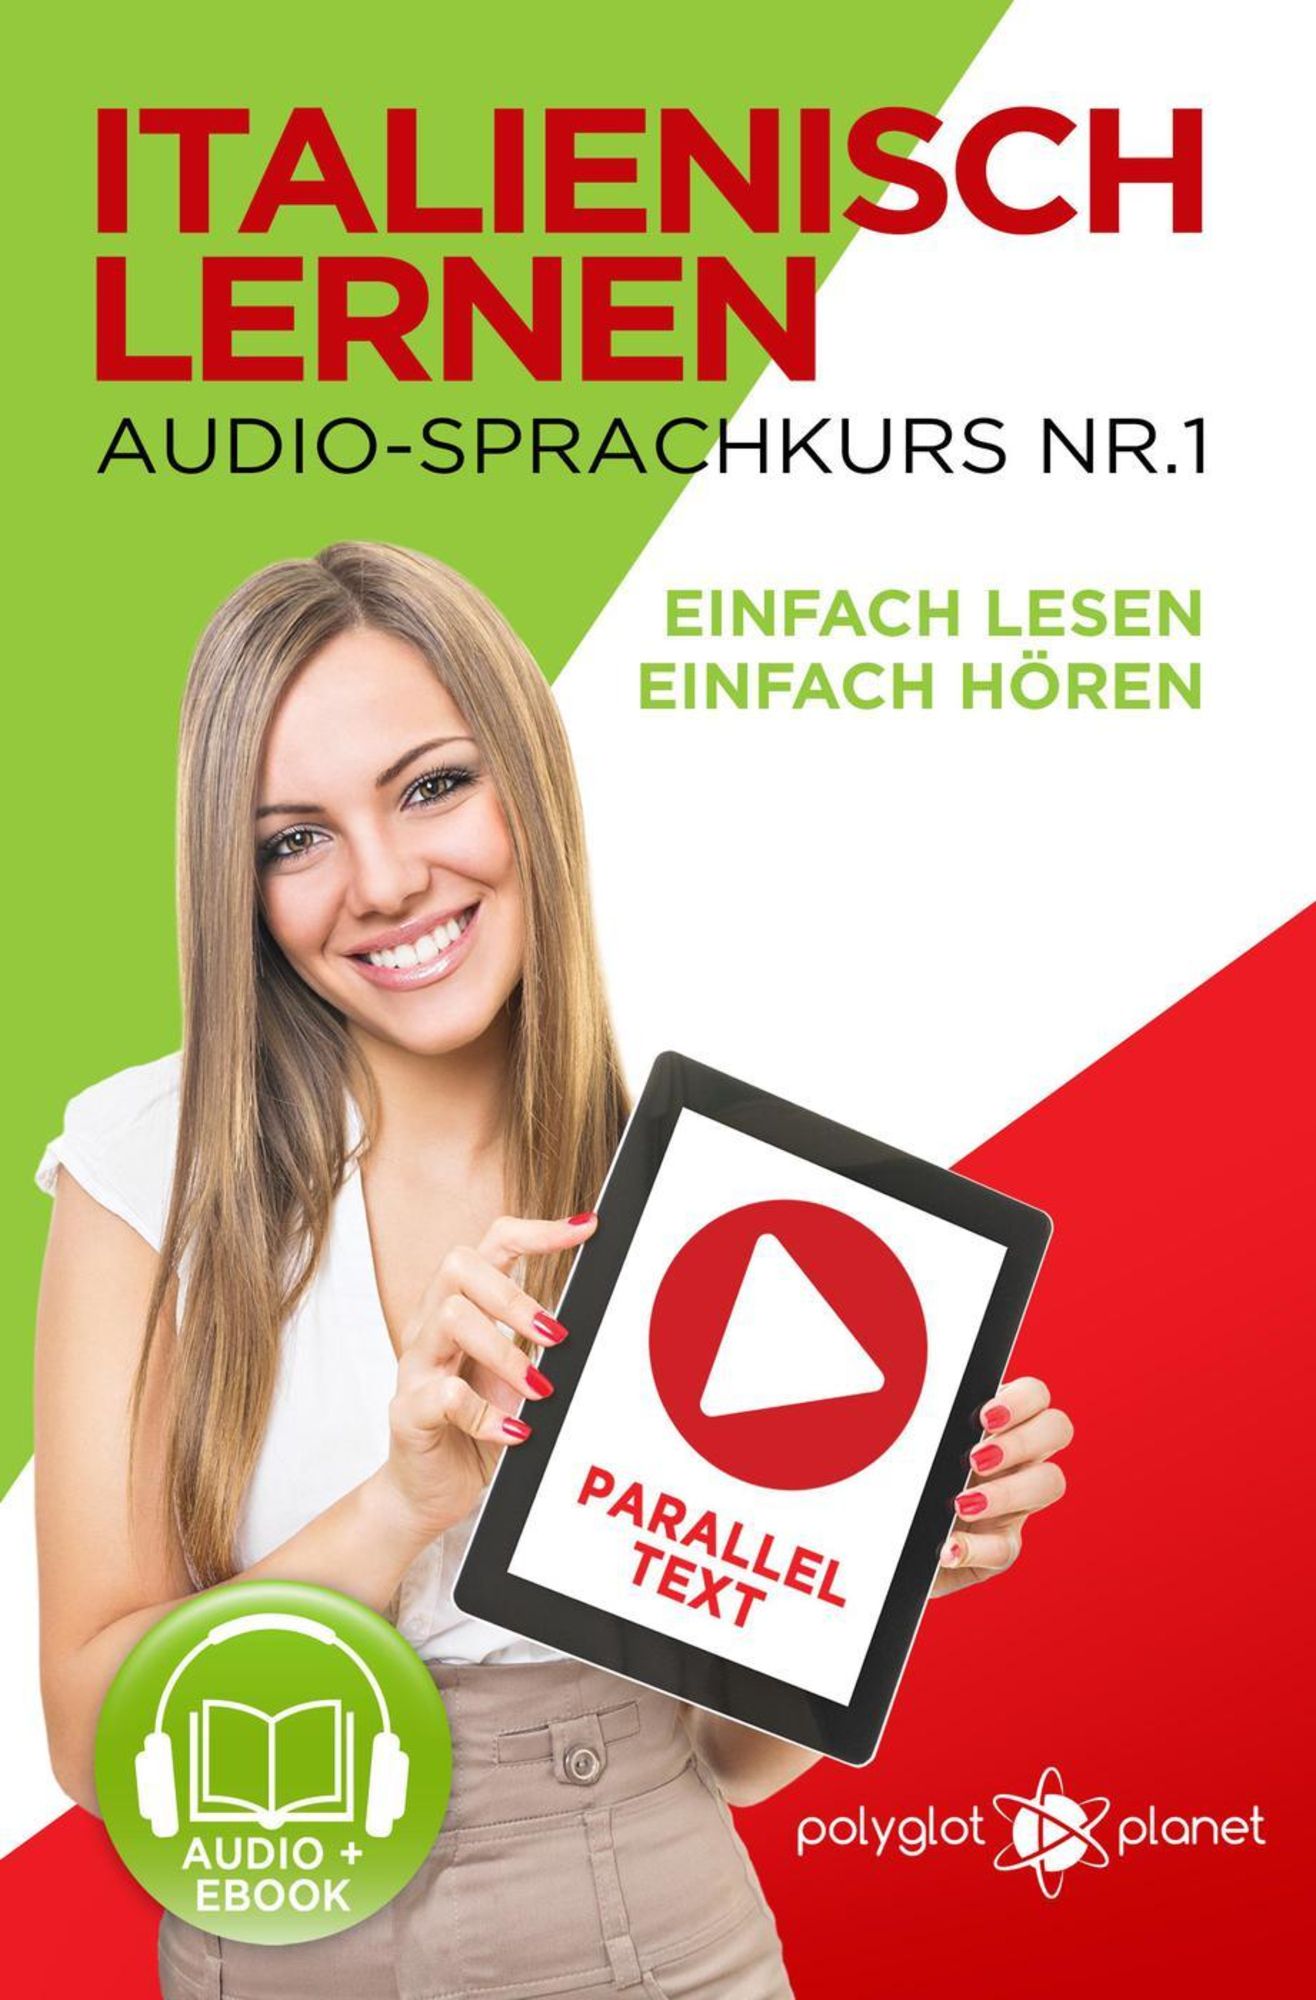 Italienisch Lernen - Lernen Einfach eBook Audio-Sprachkurs & | - Planet\' Lesen)\' Nr. (Einfach Hören Paralleltext Einfach - \'Polyglot Lesen Hören | | 1 Italienisch von